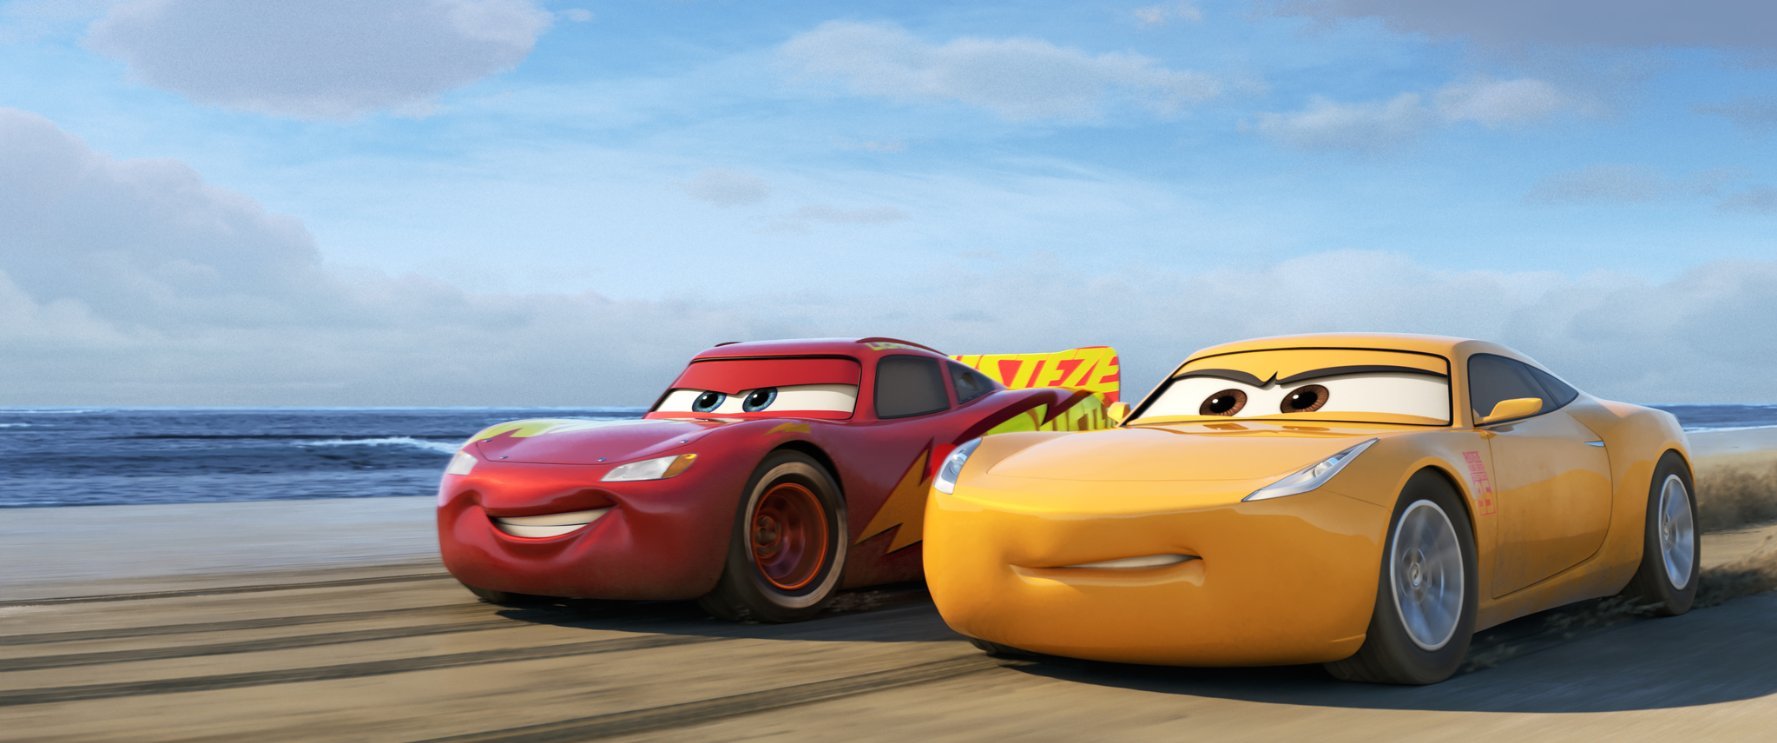 Auta 3: První dojmy z nové pixarovky